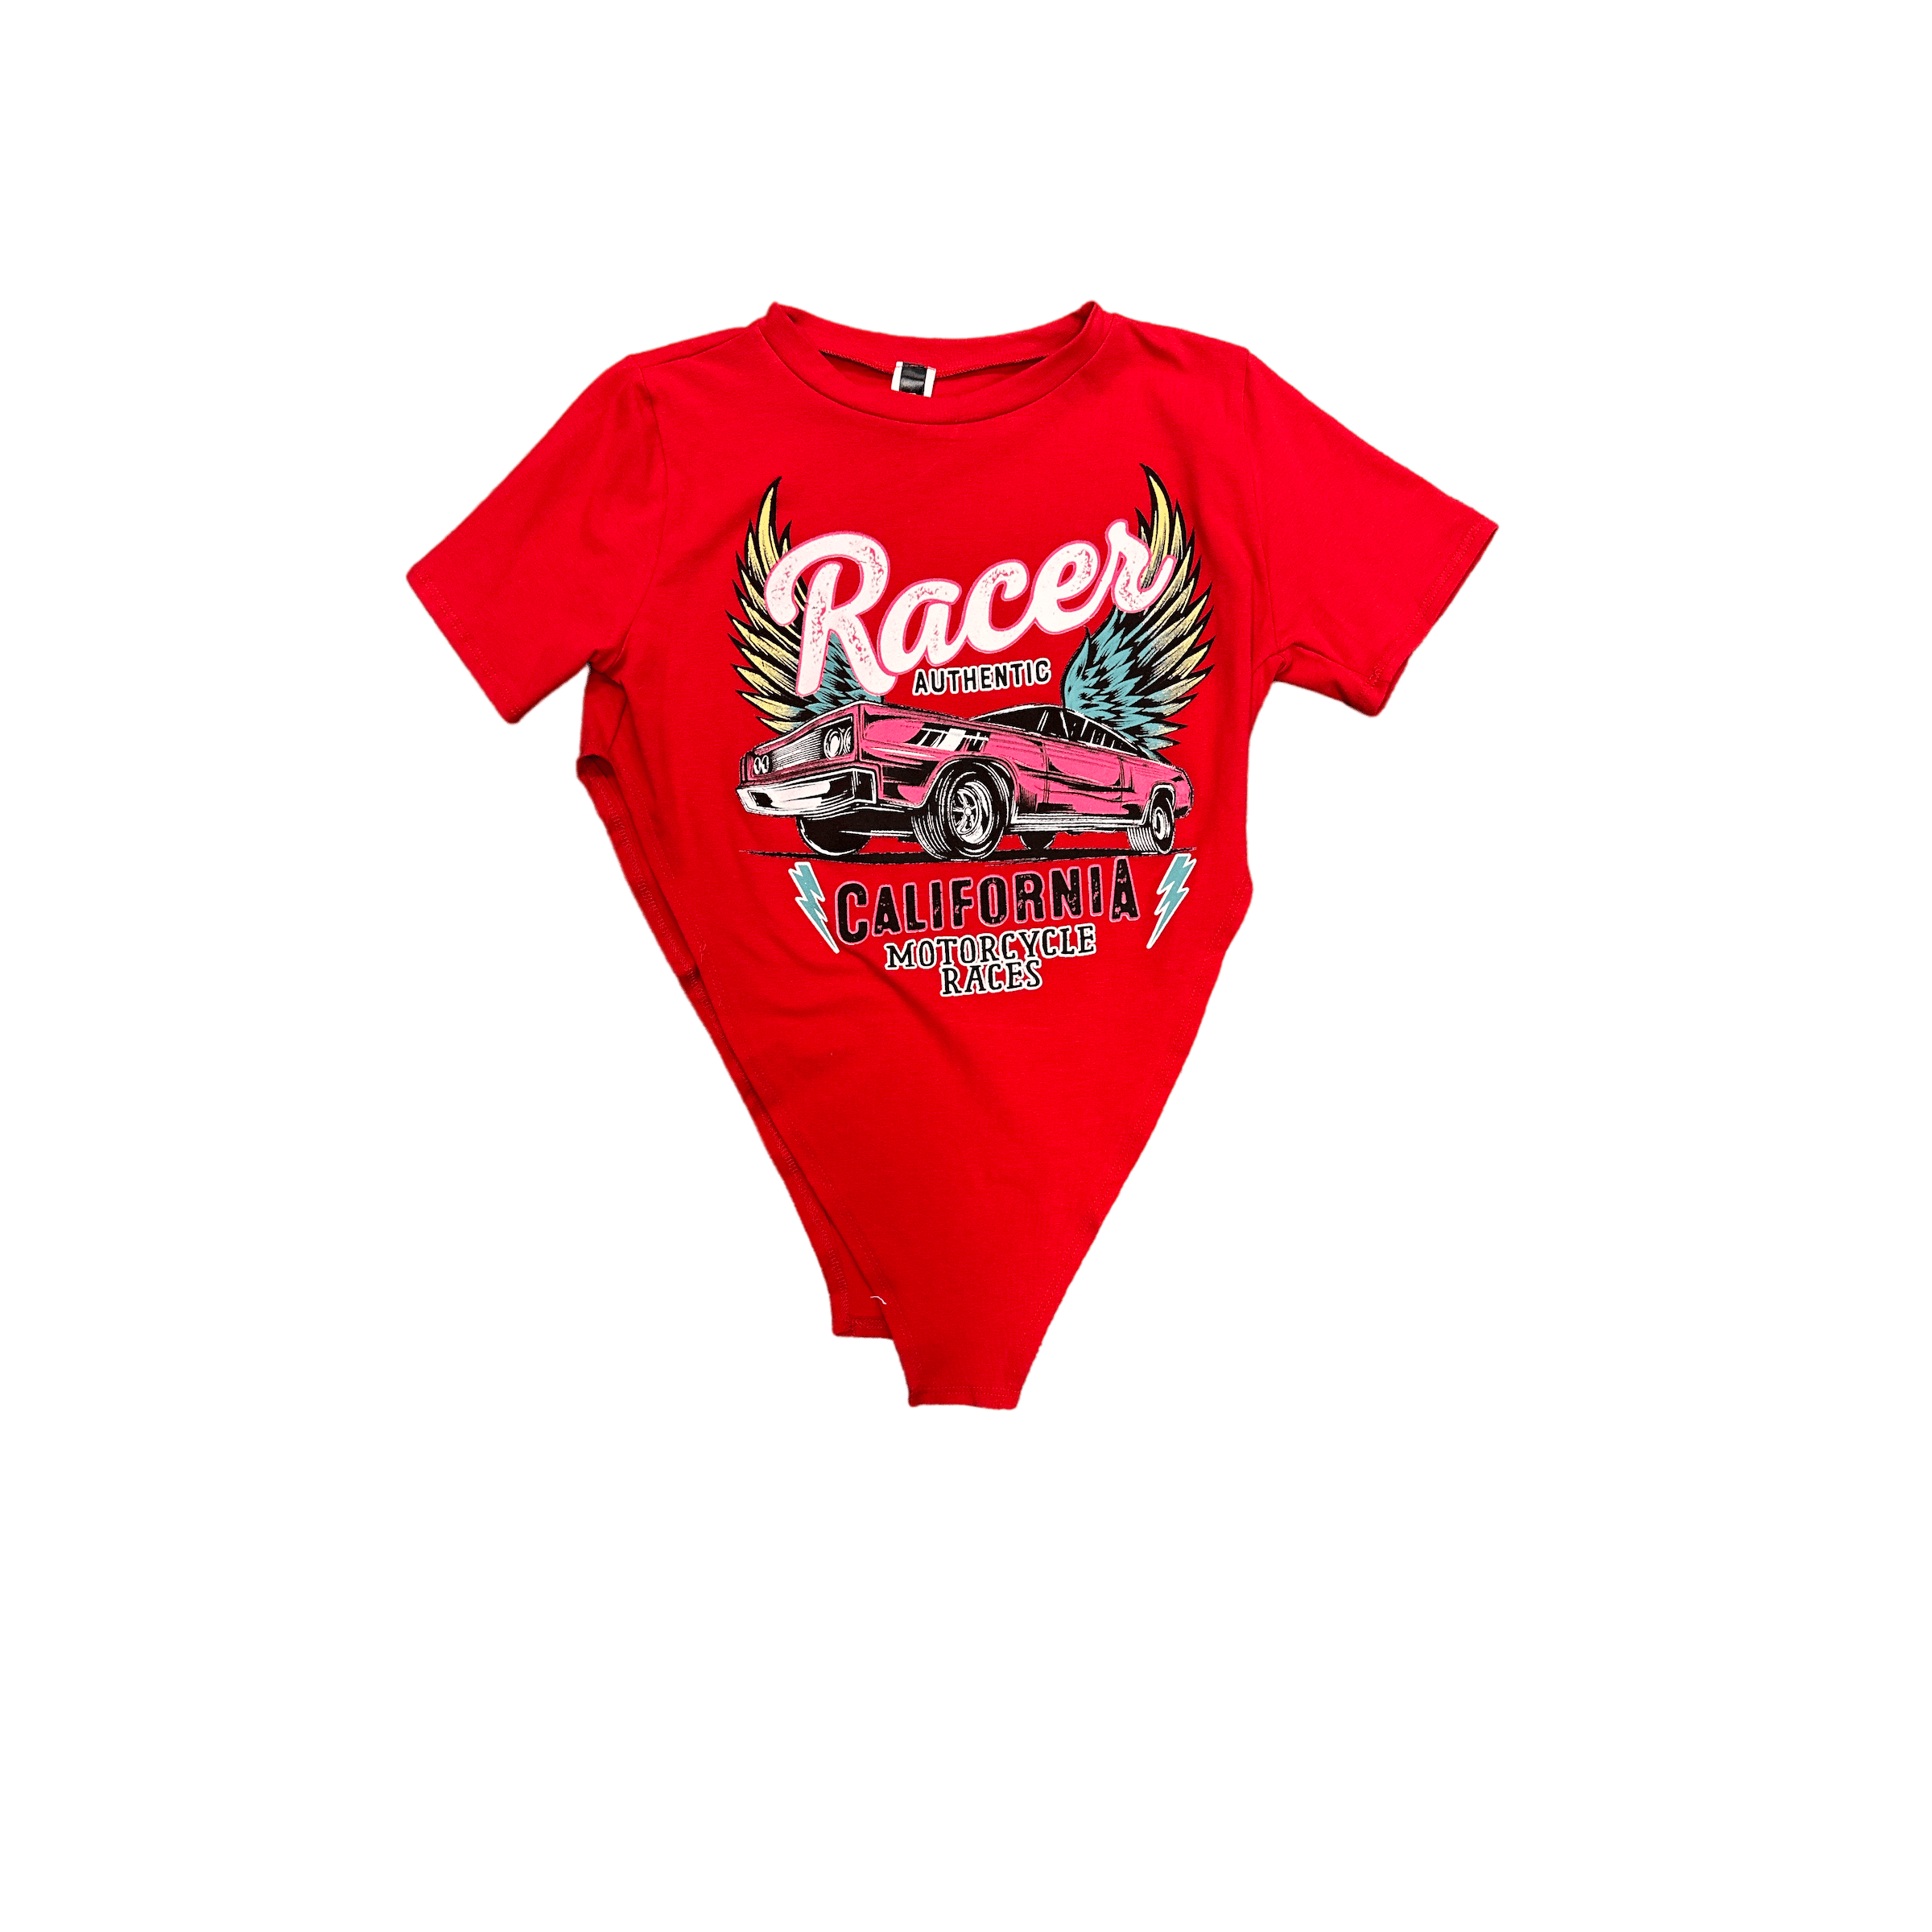 JNk T SHIRT Red California racer shirt